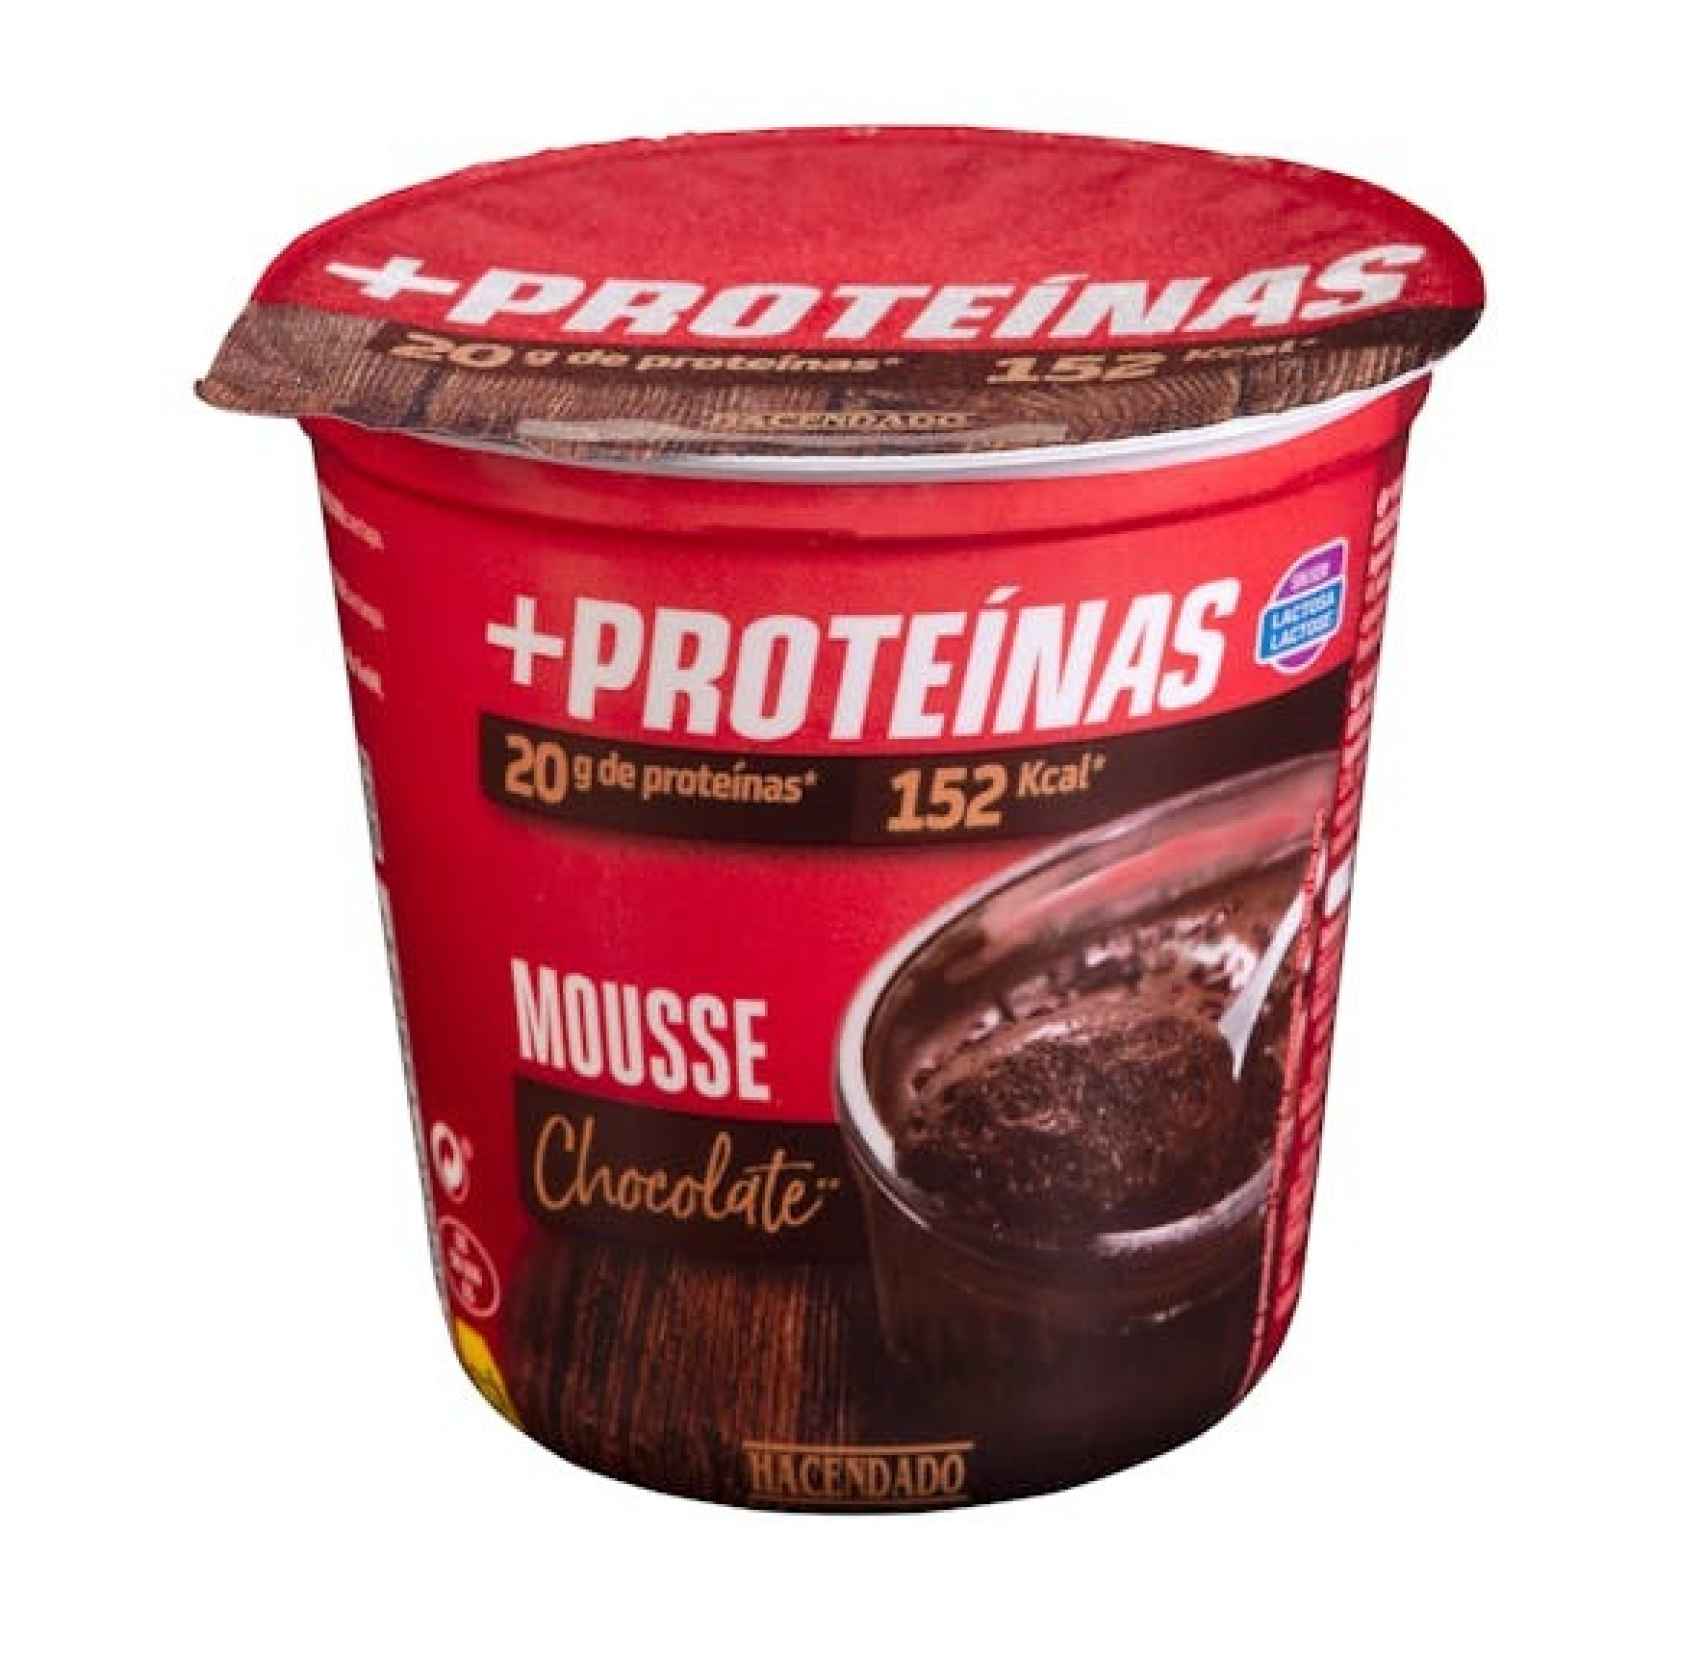 La Mousse +Proteínas sabor Chocolate de Hacendado.